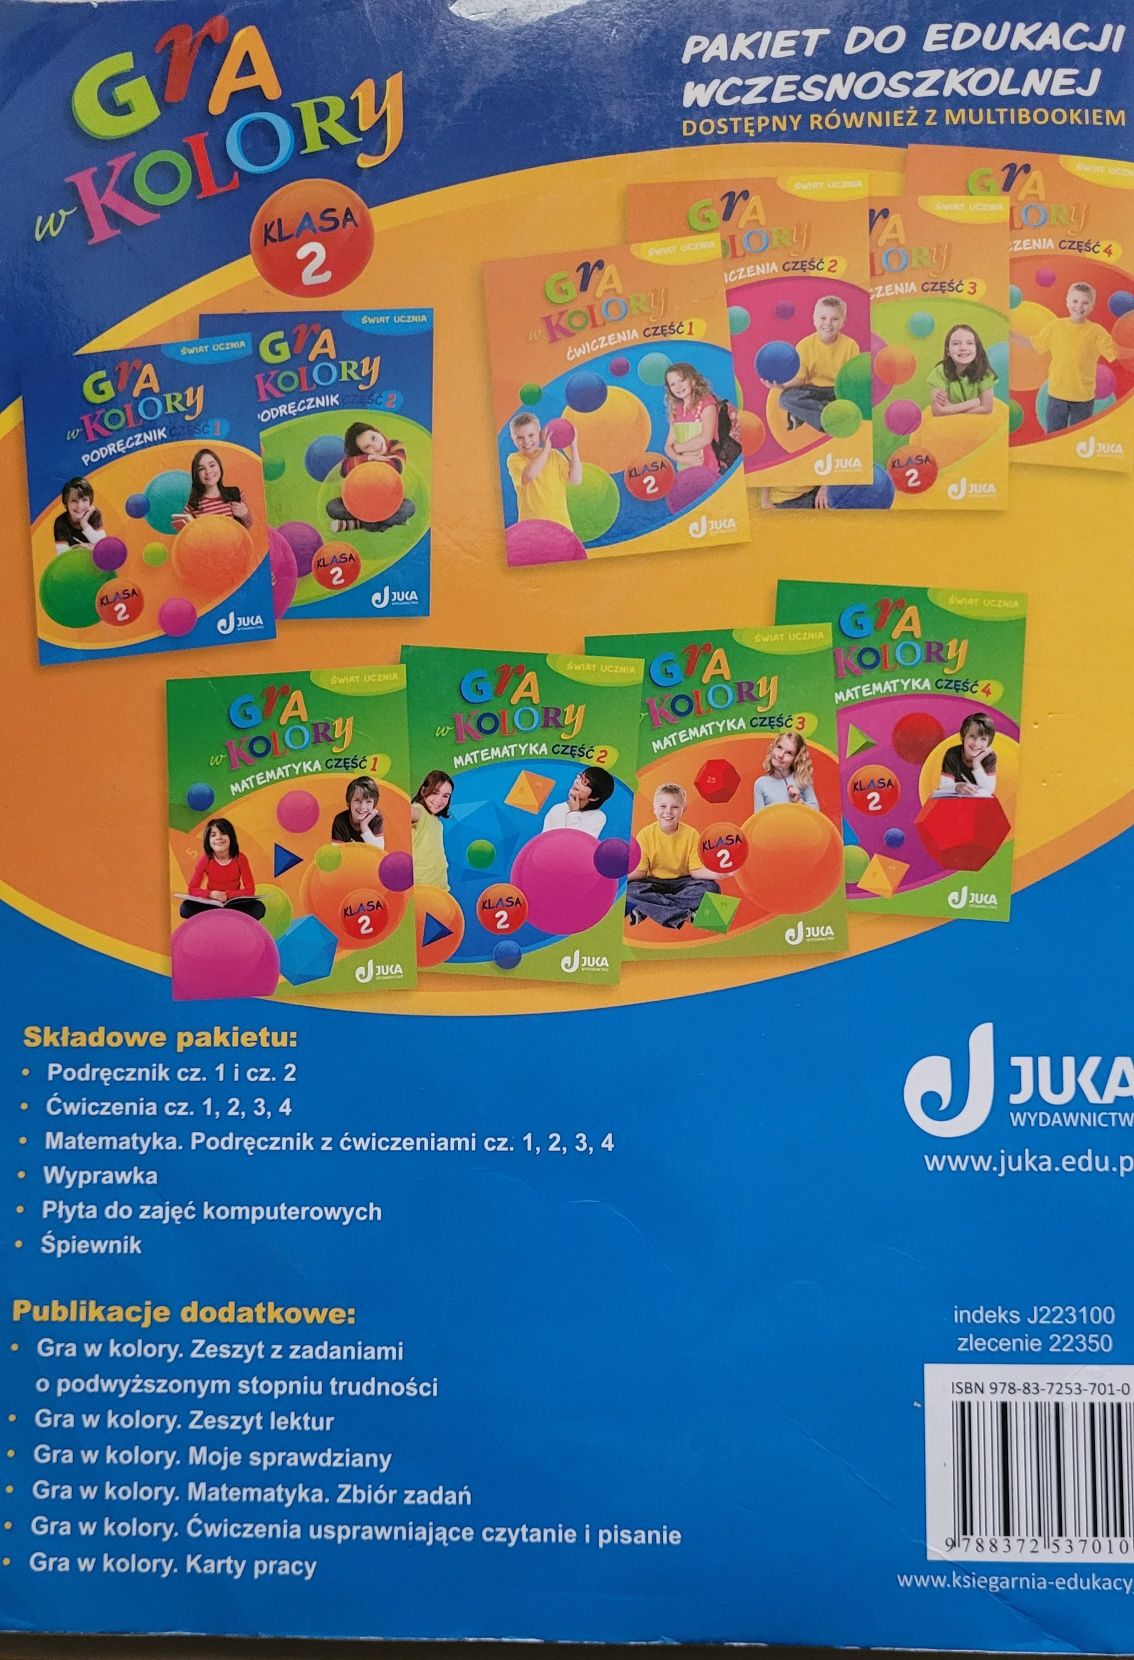 Gra w kolory 2, Podręcznik używany do edukacji wczesnoszkolnej